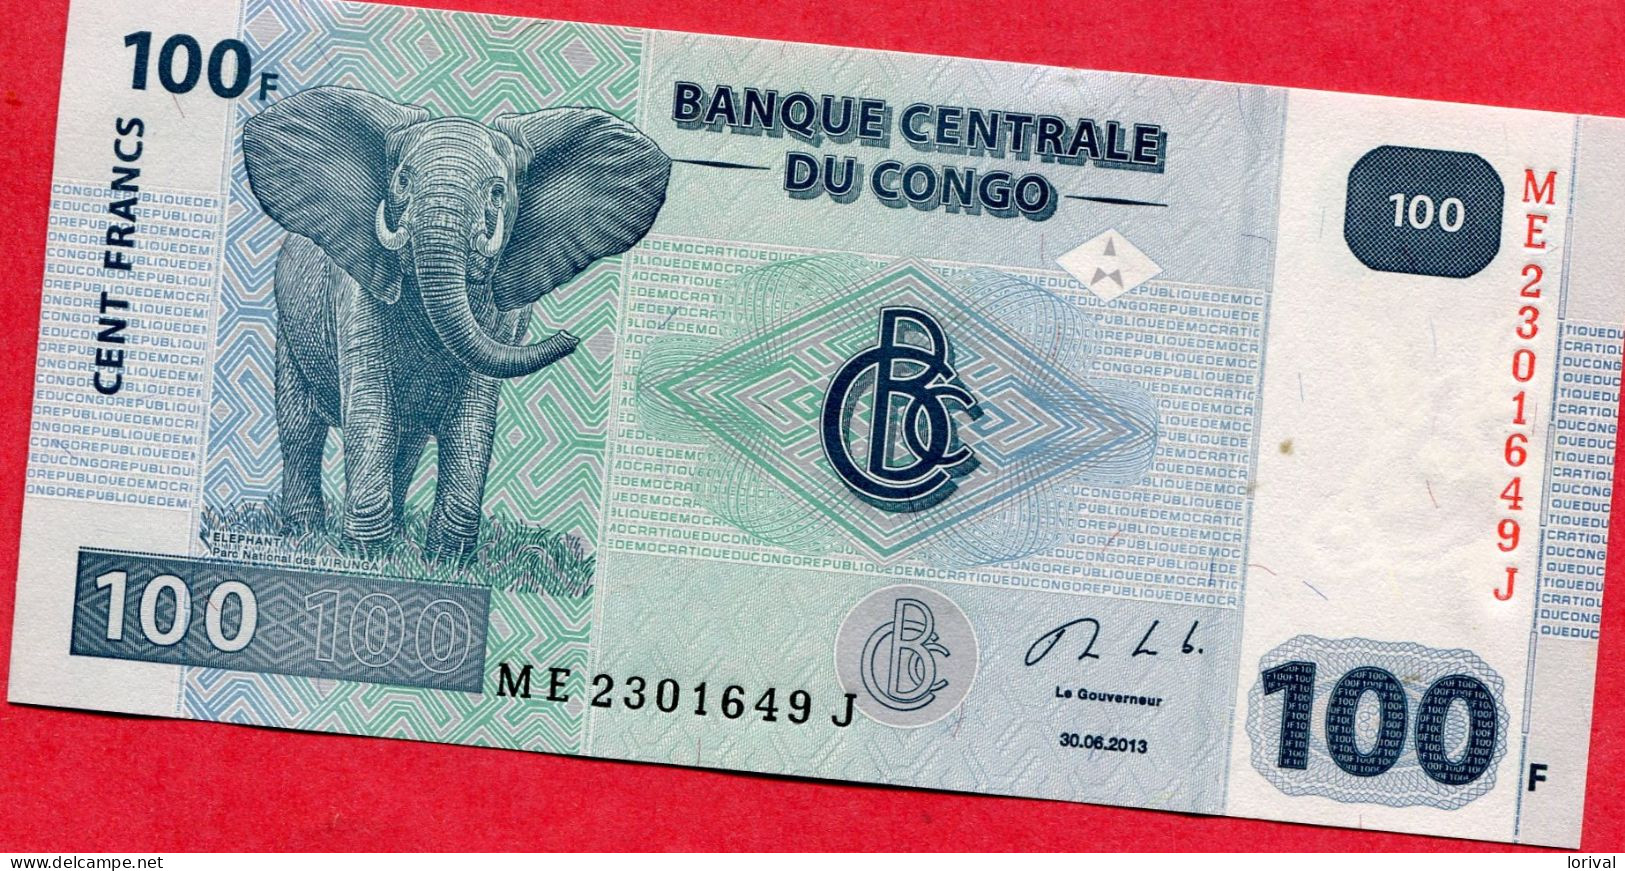 100 Francs Neuf 3 Euros - Republic Of Congo (Congo-Brazzaville)